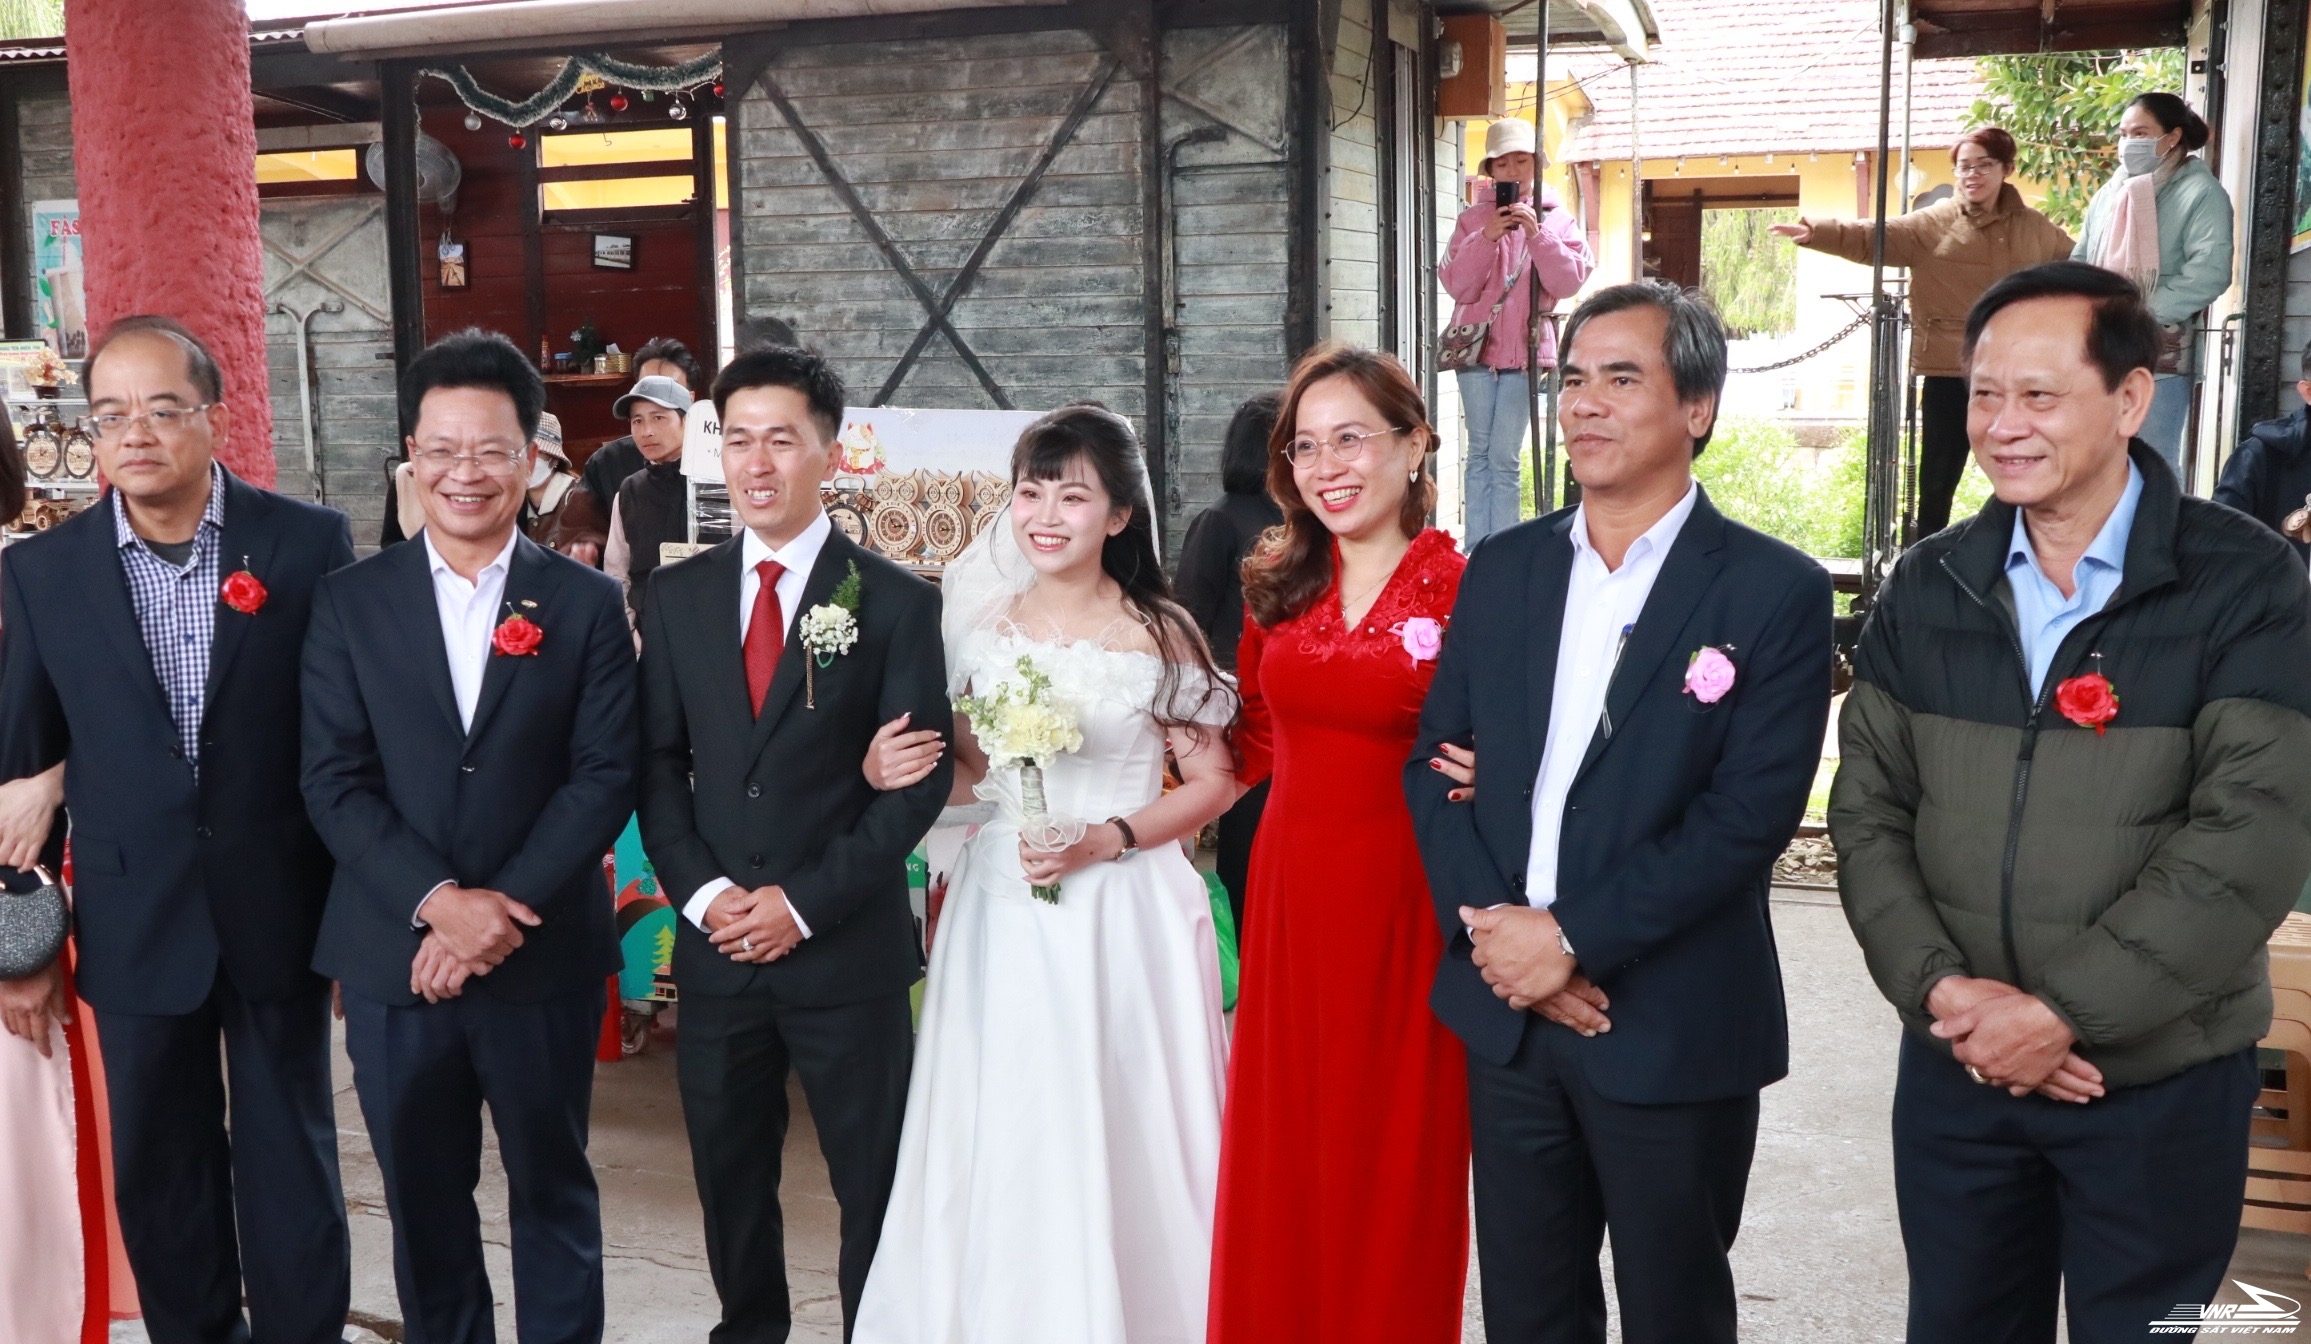 Lần đầu tiên một đám cưới được tổ chức trên chuyến tàu tại Đà Lạt